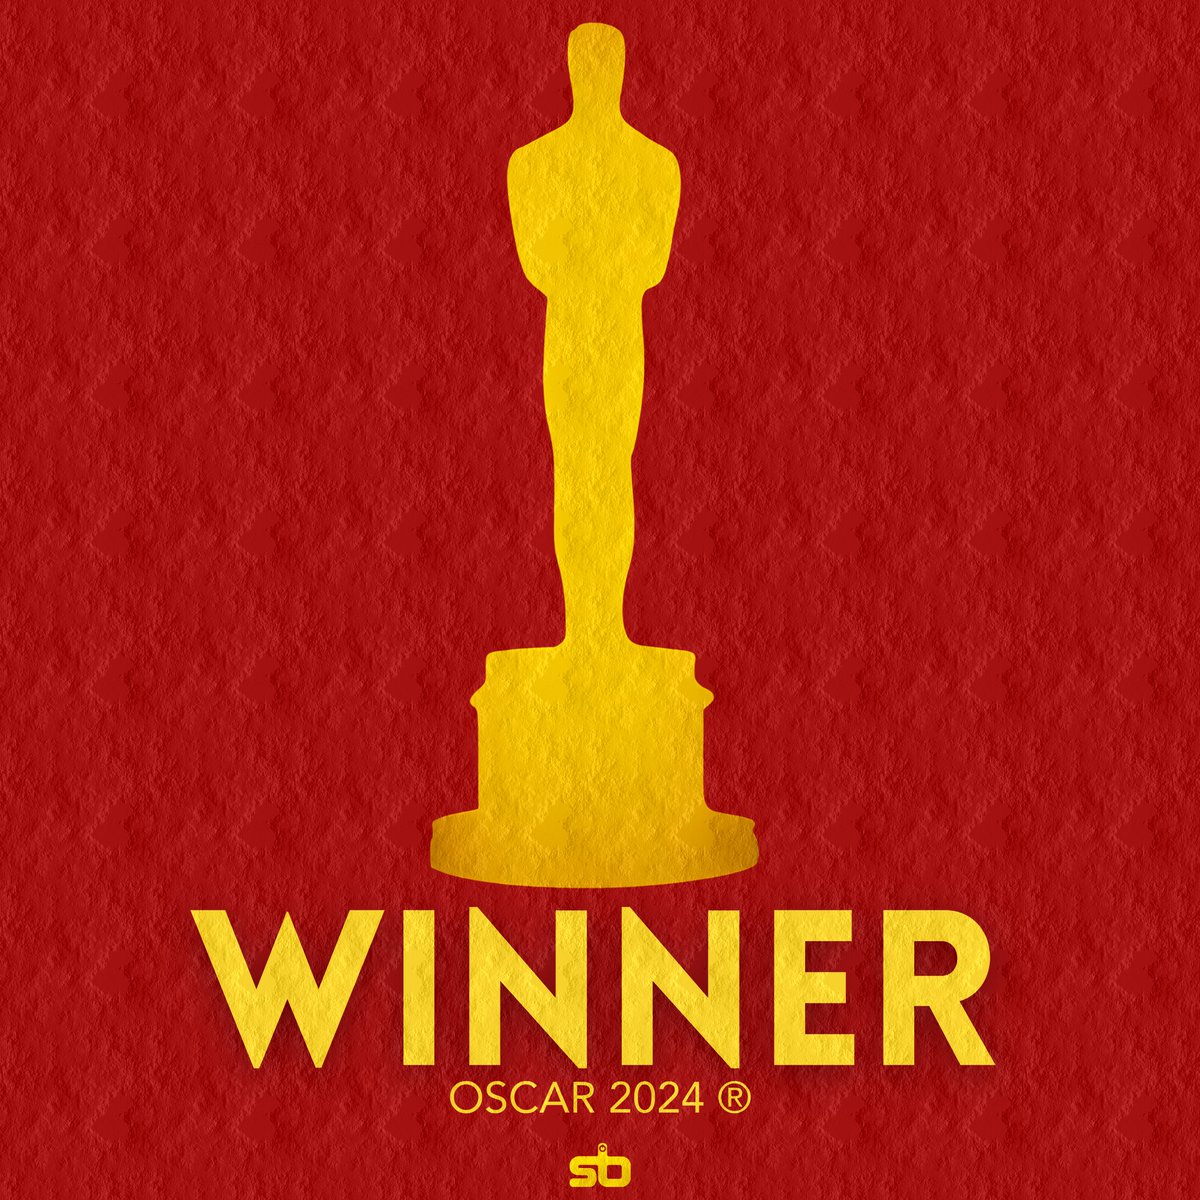 🏆 EMMA STONE vence o Oscar de “Melhor Atriz” por Poor Things. #Oscars #Oscars2024